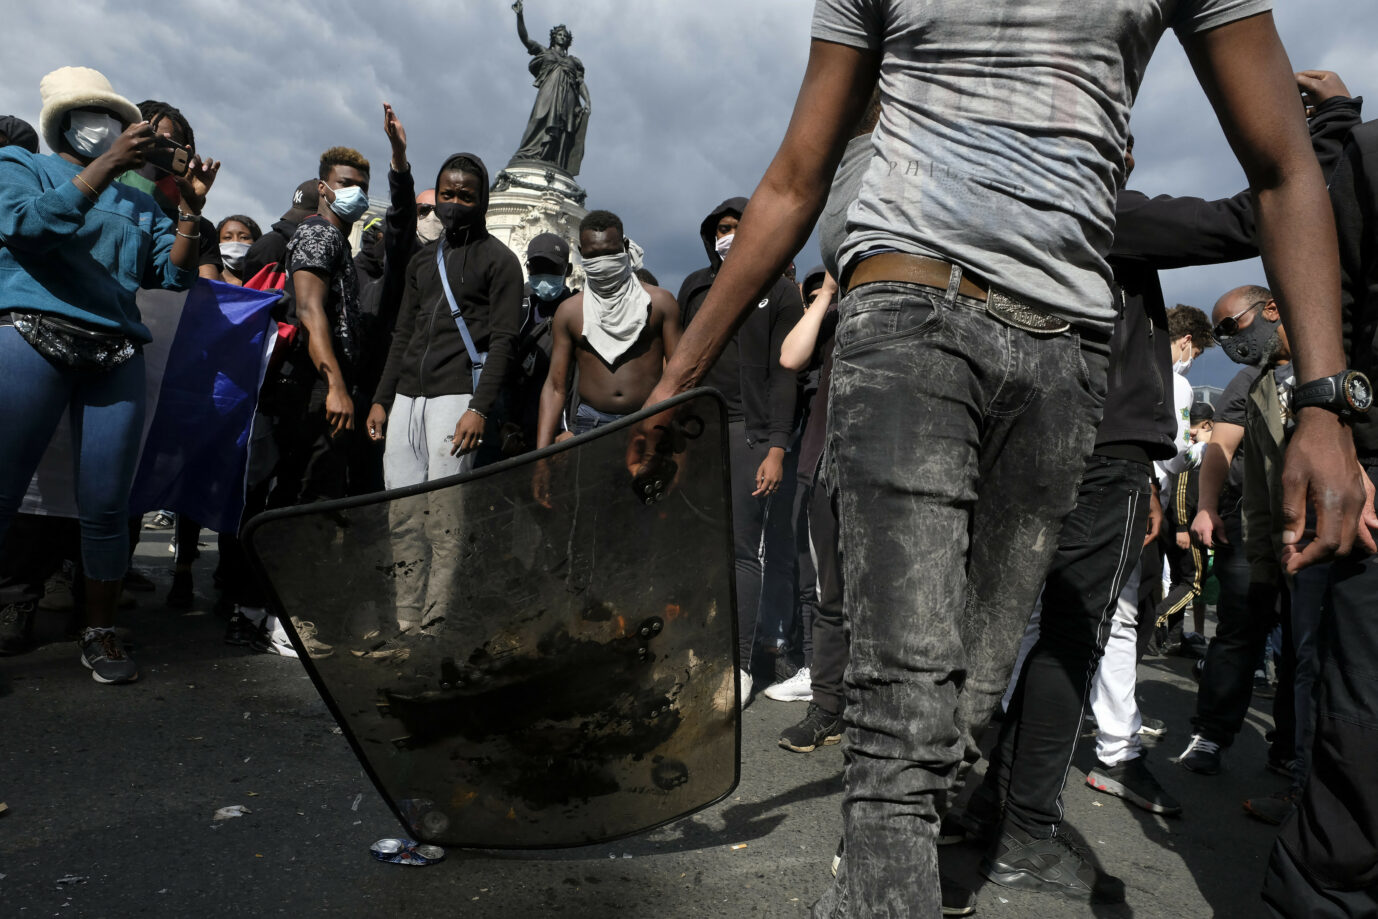 Afrikanische Demonstranten in Paris: Vertreter des Postkolonialismus fordern die Zerstörung des "weißen" Frankreichs Foto: picture alliance / abaca | Yaghobzadeh Alfred/ABACA